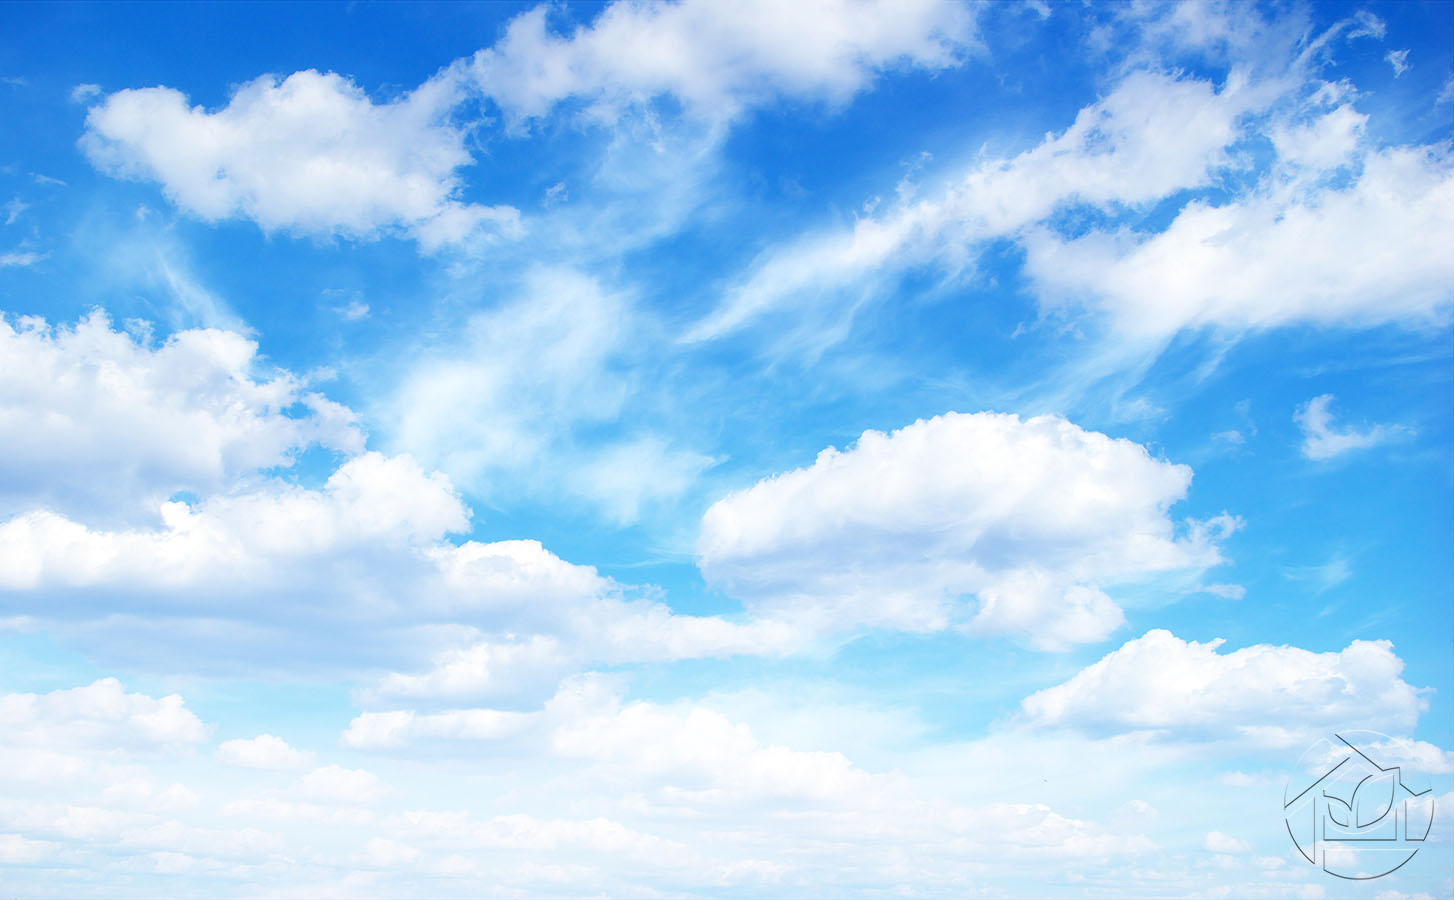 Фотообои "Синее небо с облаками" - Арт. 009009014